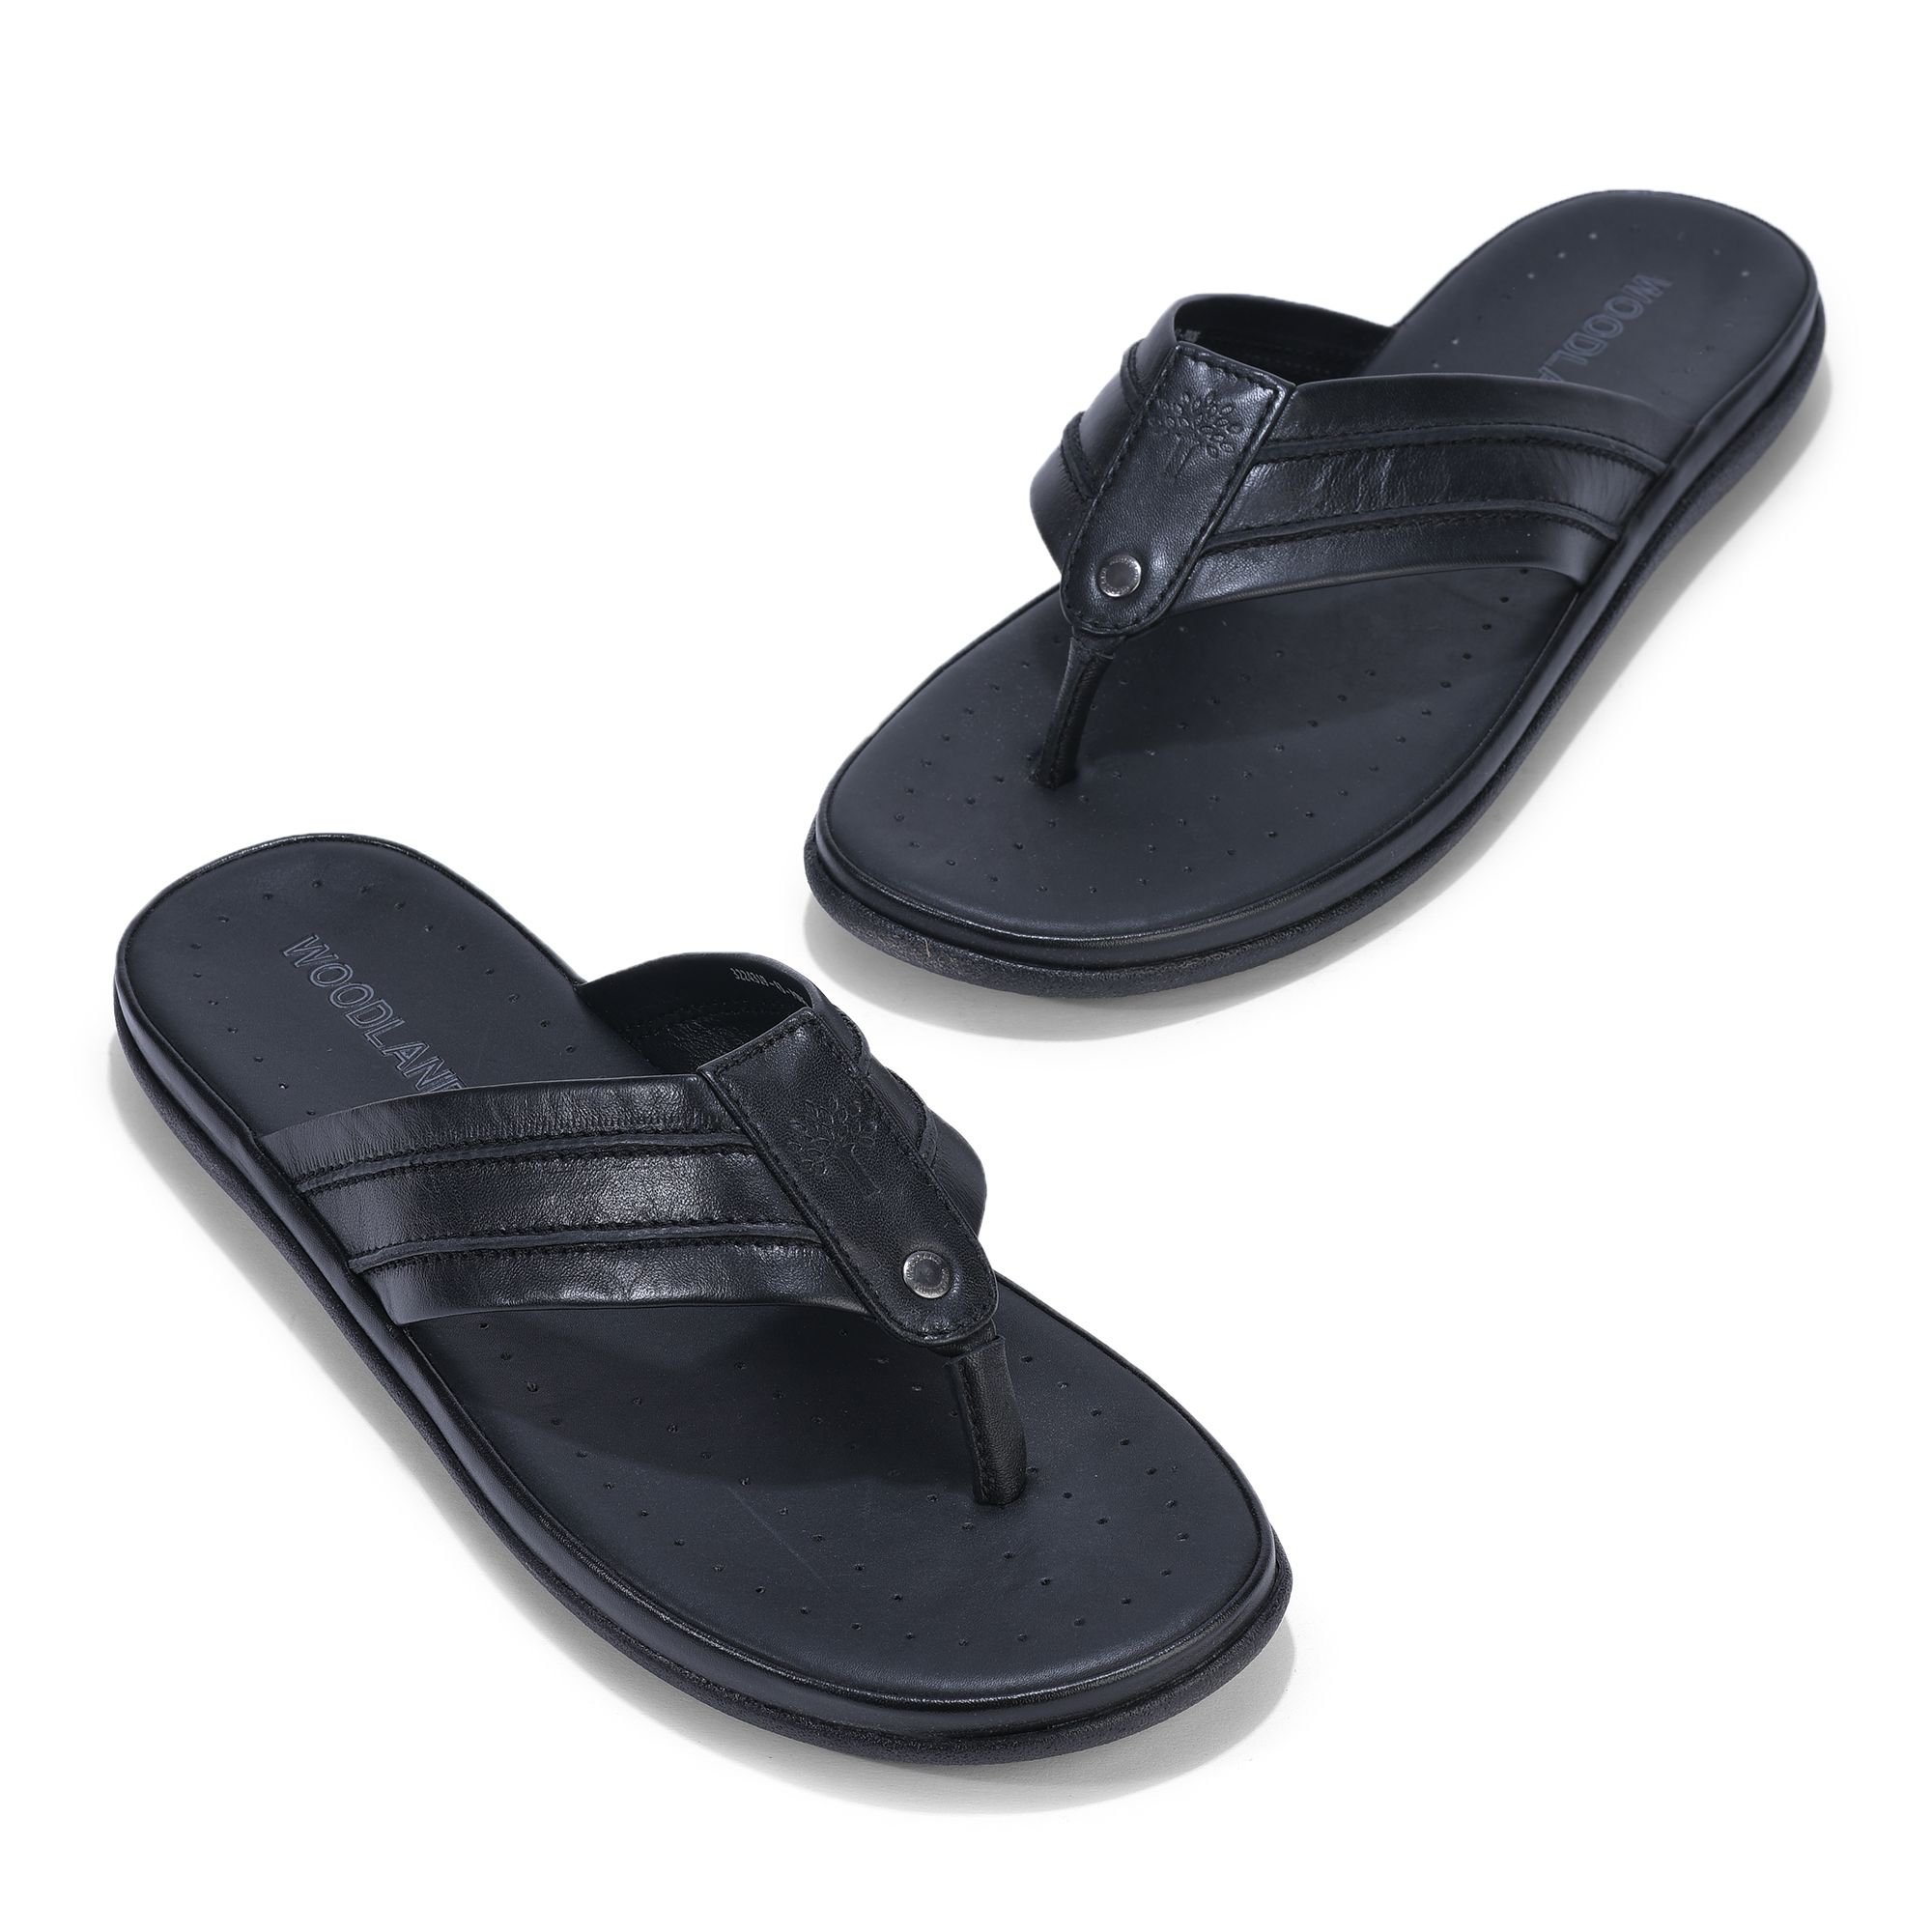 Black casual slipper for men